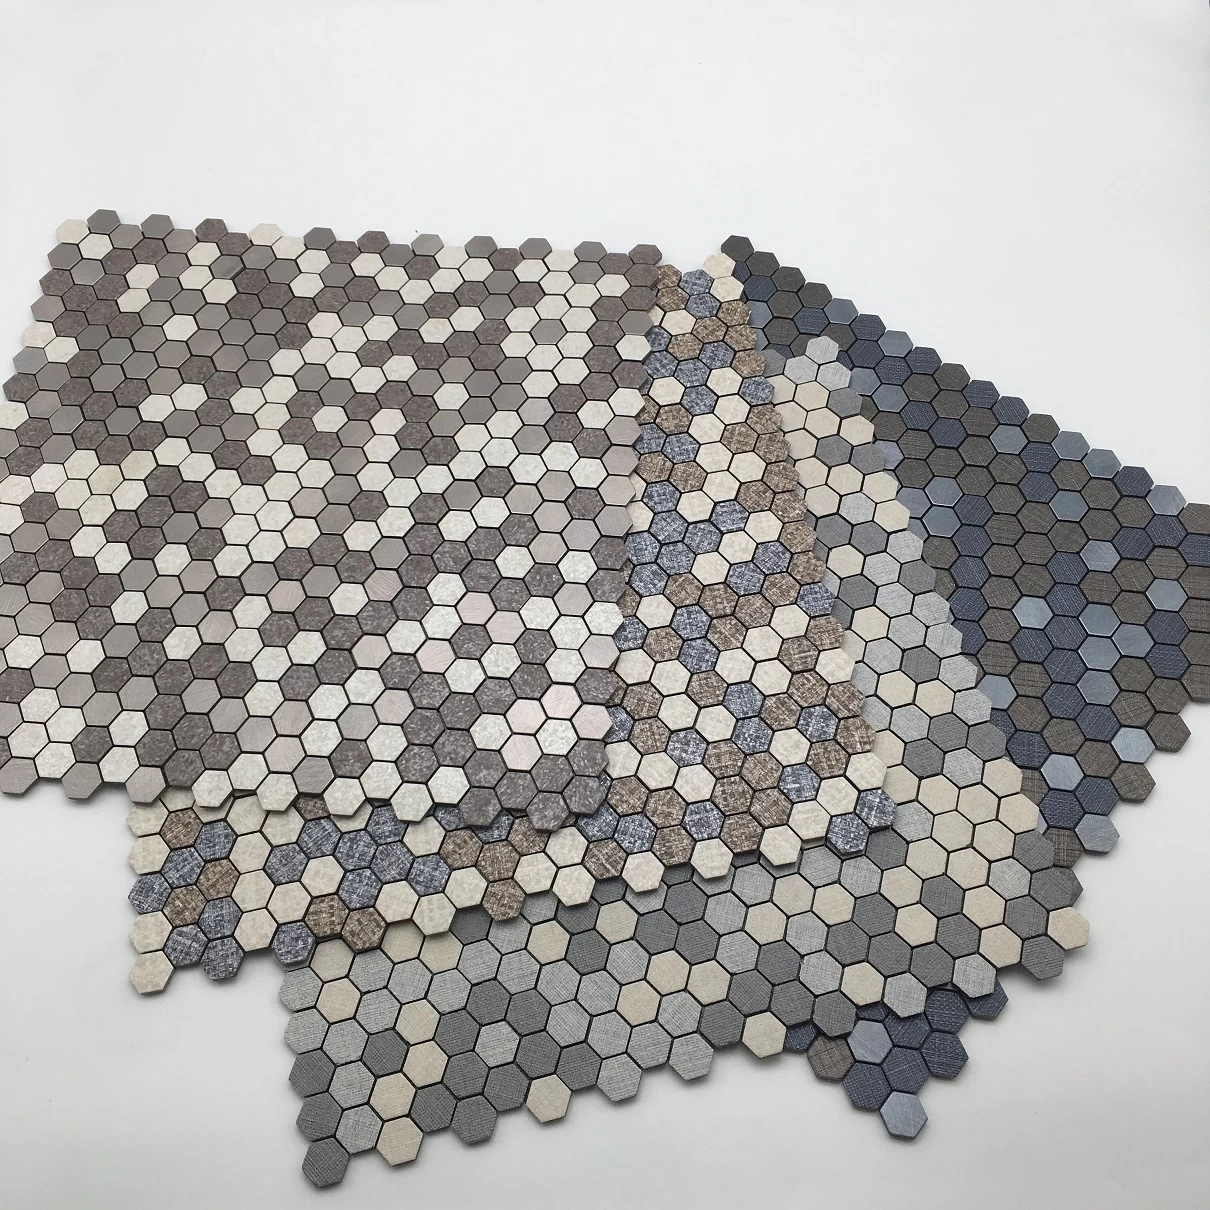 Hot sale Peel and stick gold mosaic tile Hexagon tile for Kitchen Backsplash tile